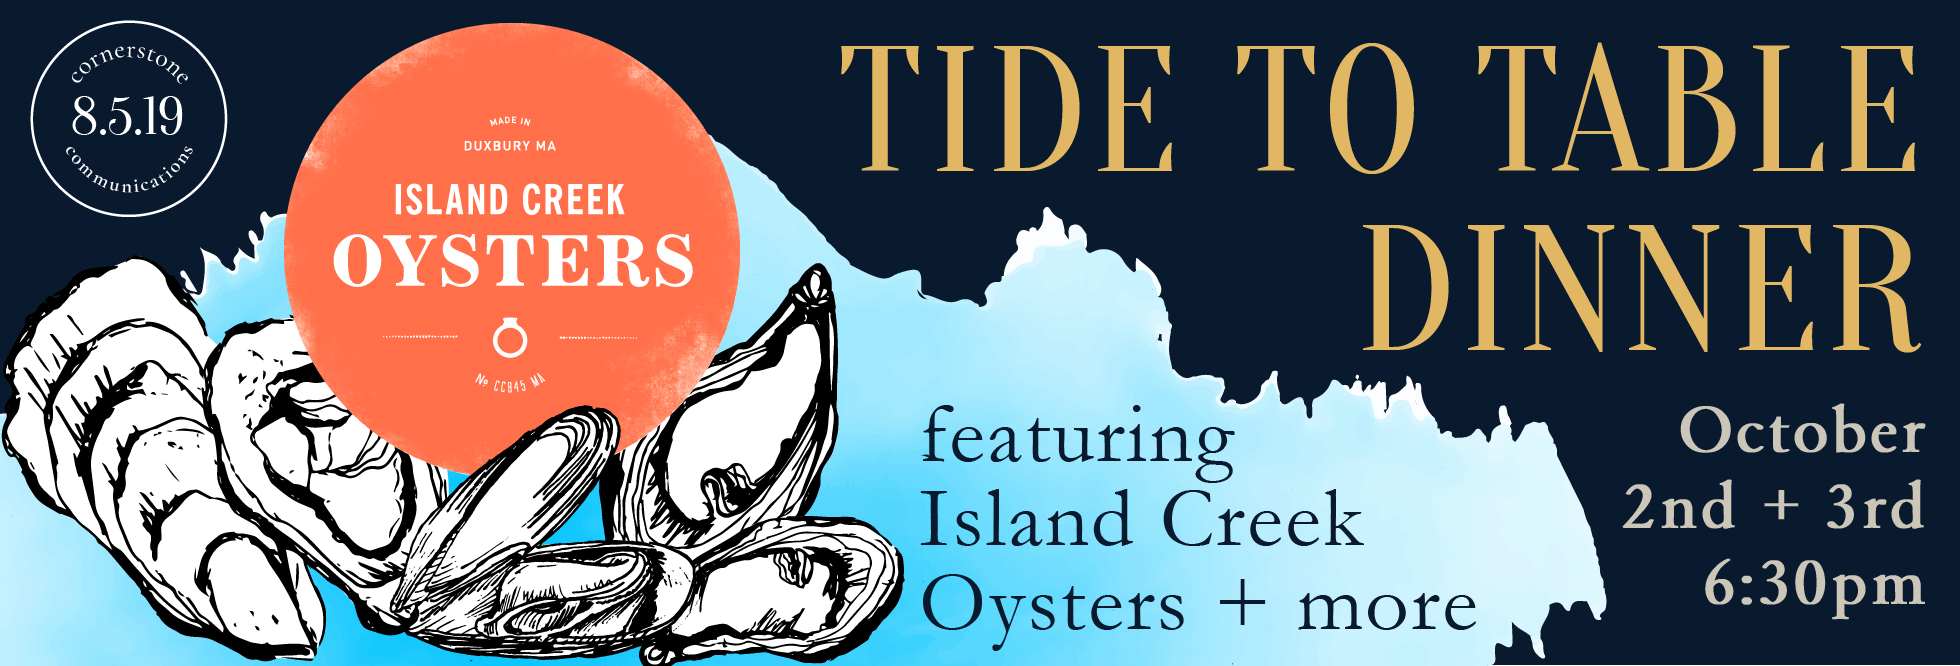 Sardine Tea Towel - Island Creek Oysters